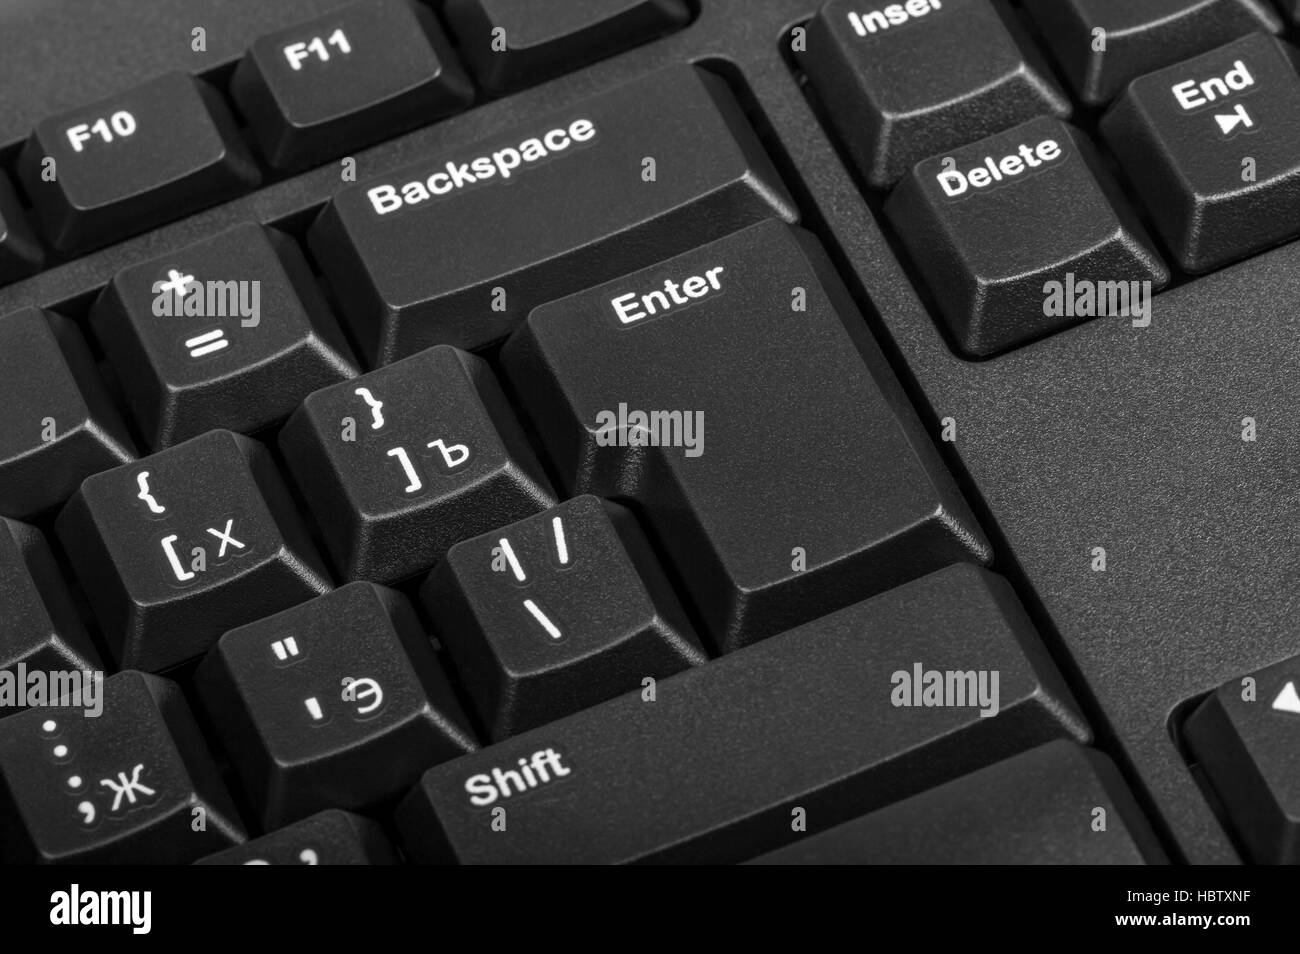 Raccolta elettronica - close-up computer nero con tastiera russa lettera e il tasto enter Foto Stock